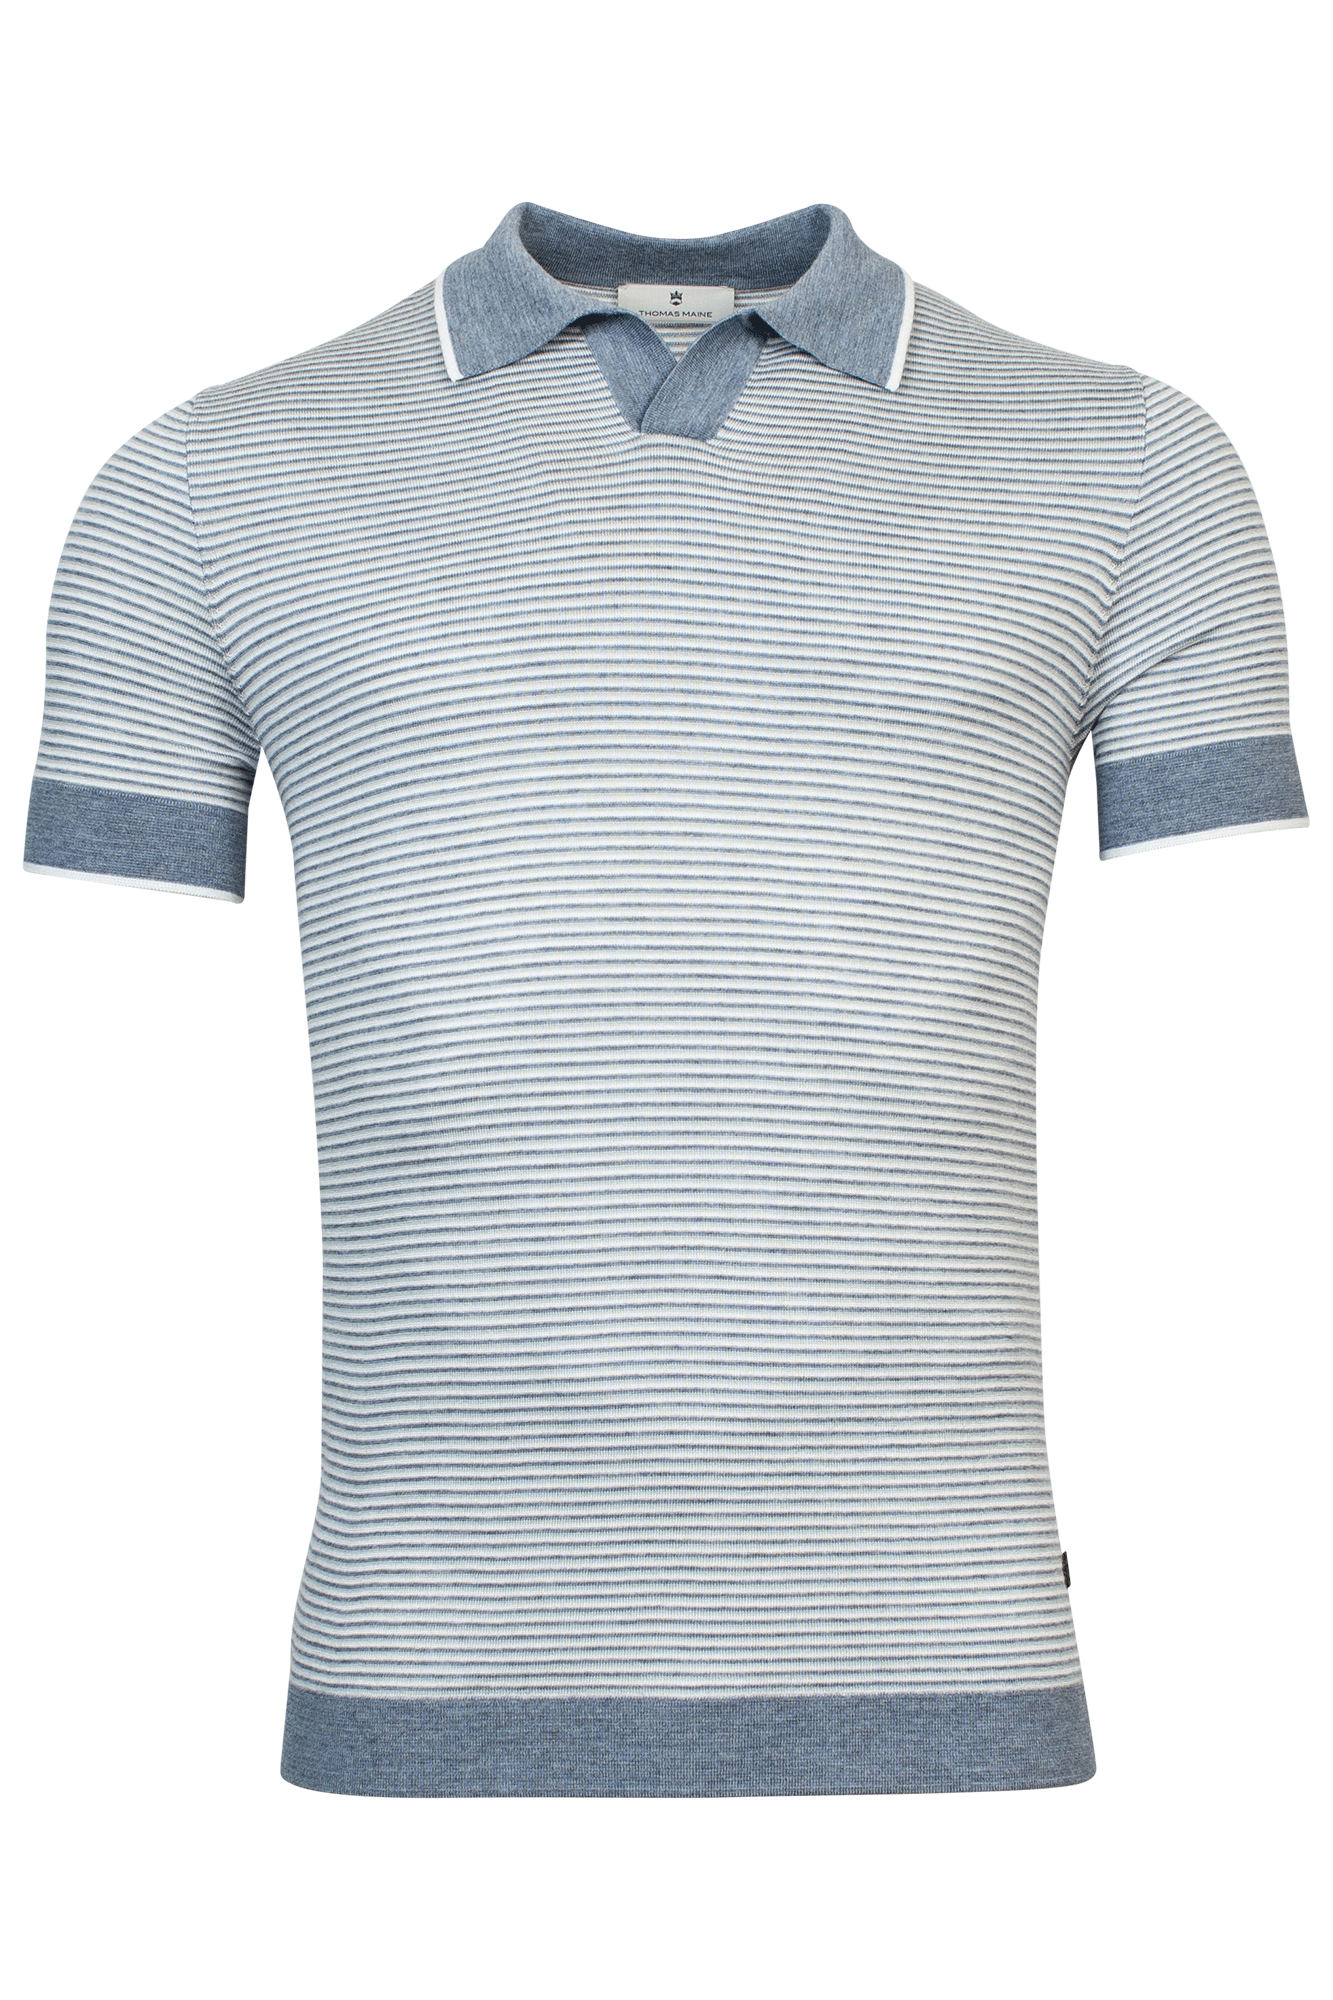 Pullover V-Neck Polo collar - Shirt Sleeves